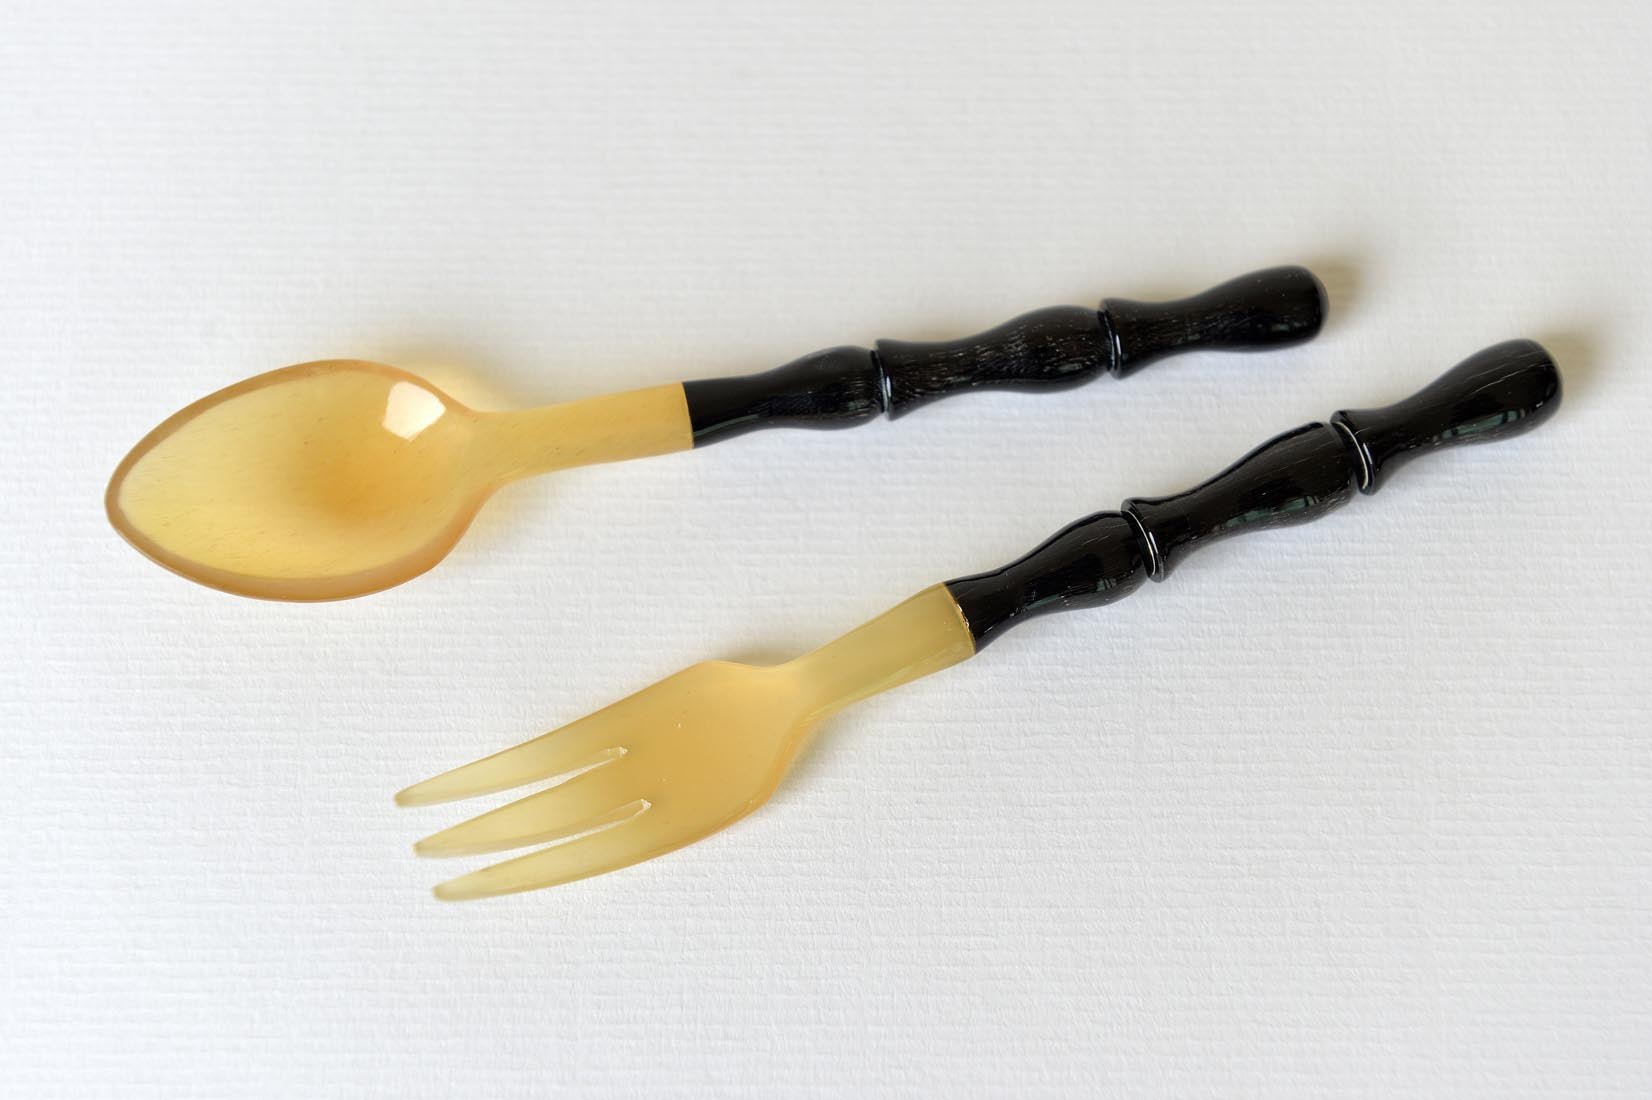 Horn spoon and fork set - Natalia Willmott